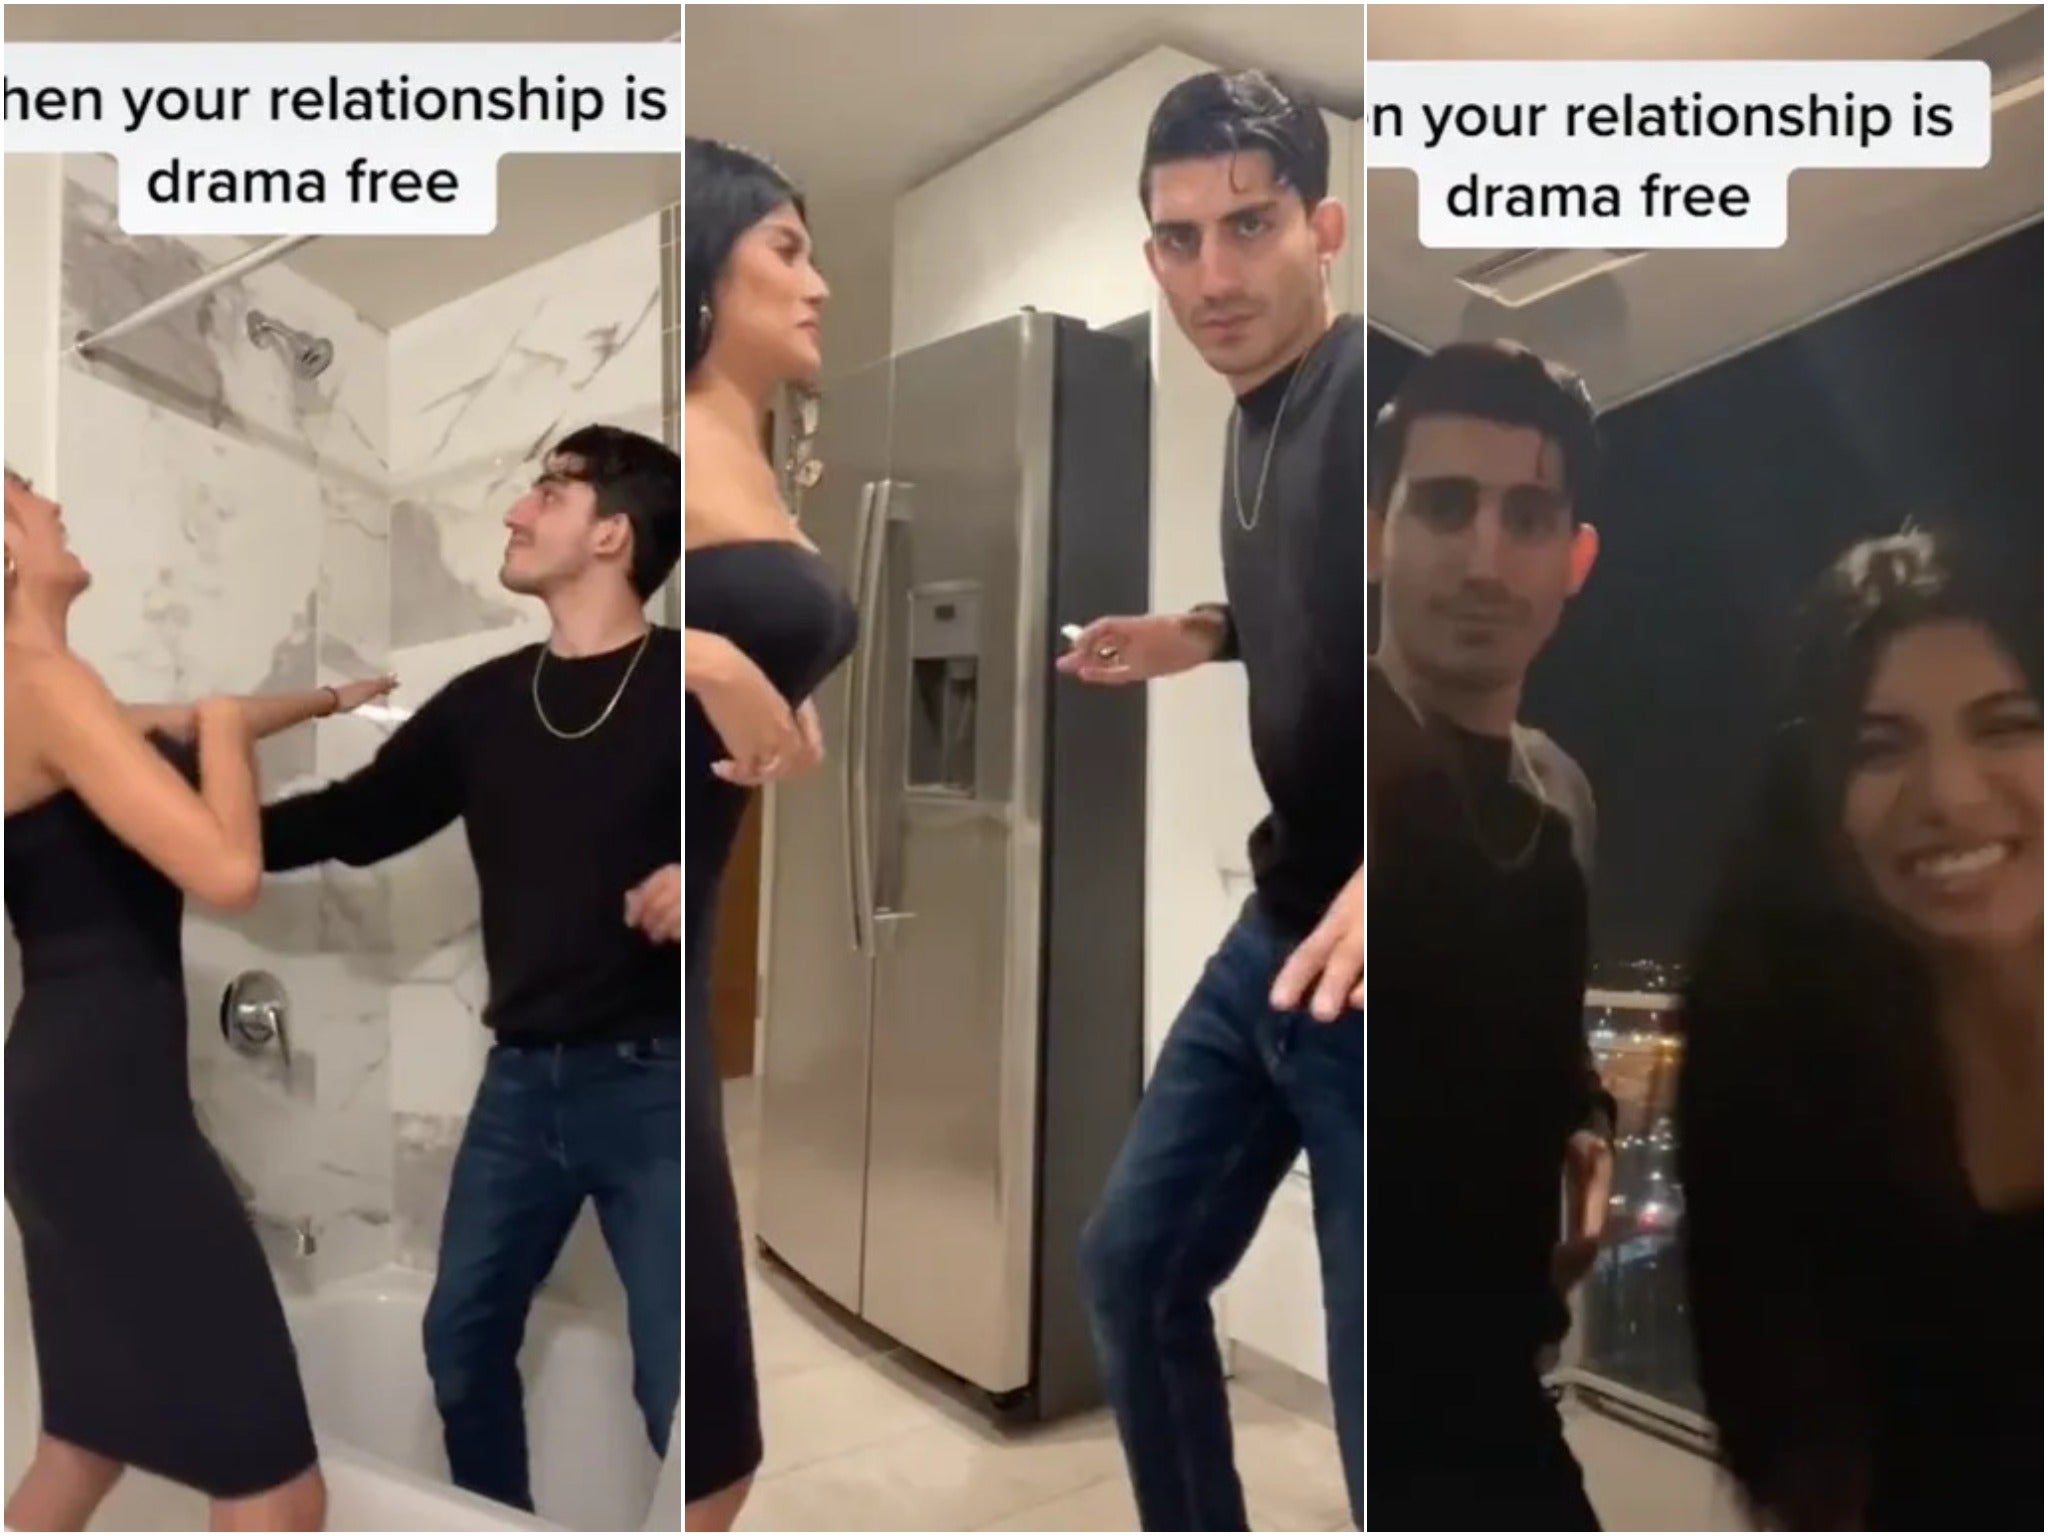 TikTok video of couple celebrating dramafree relationship emerges